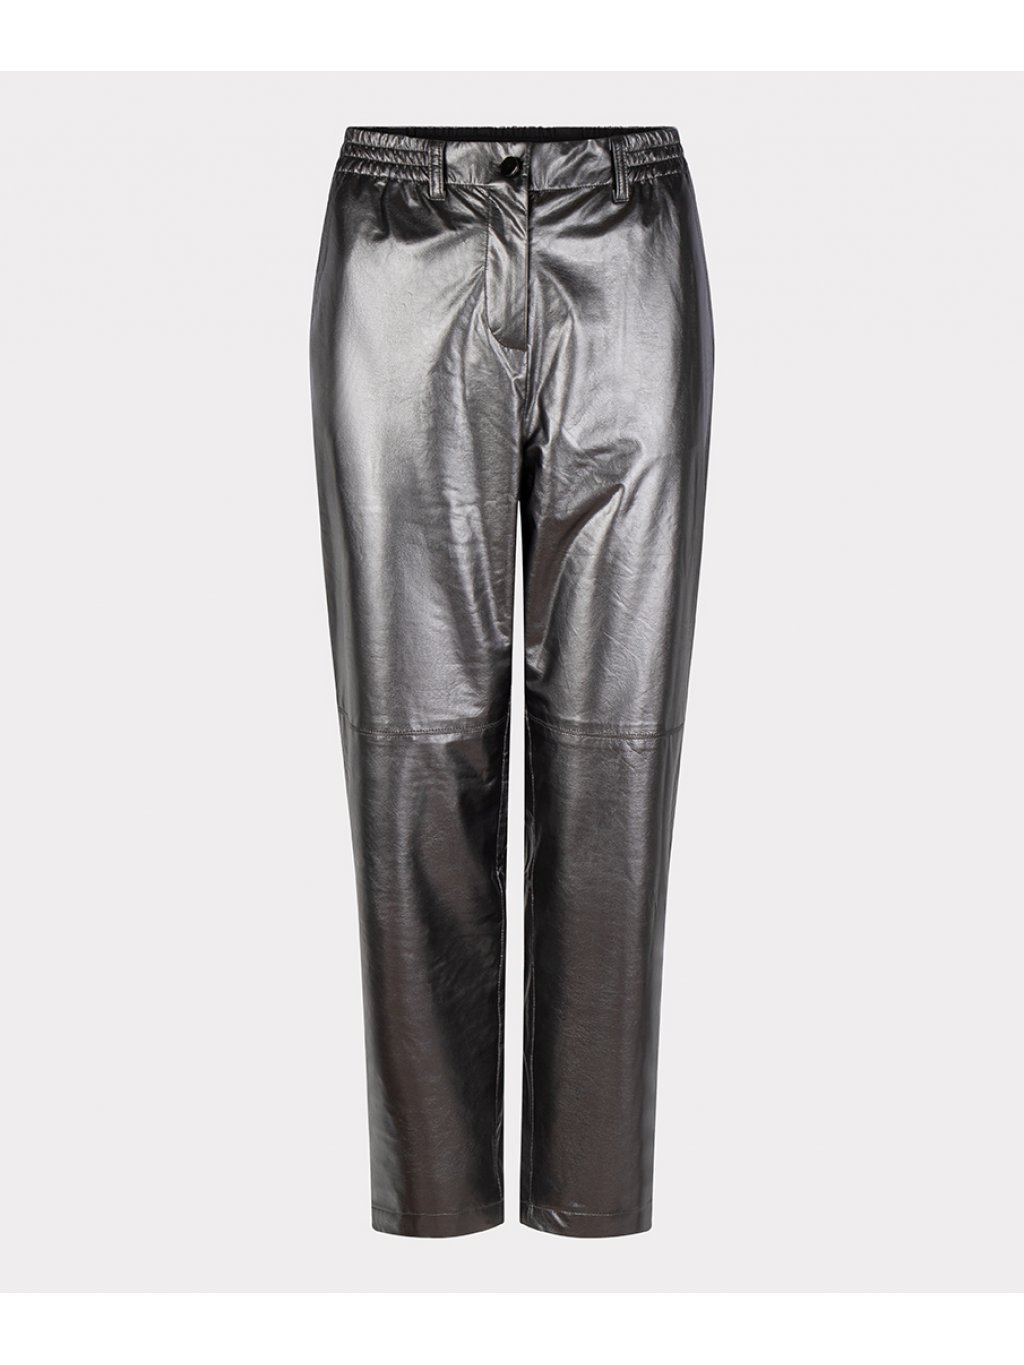 Kalhoty Esqualo 11701 metalické s podšívkou